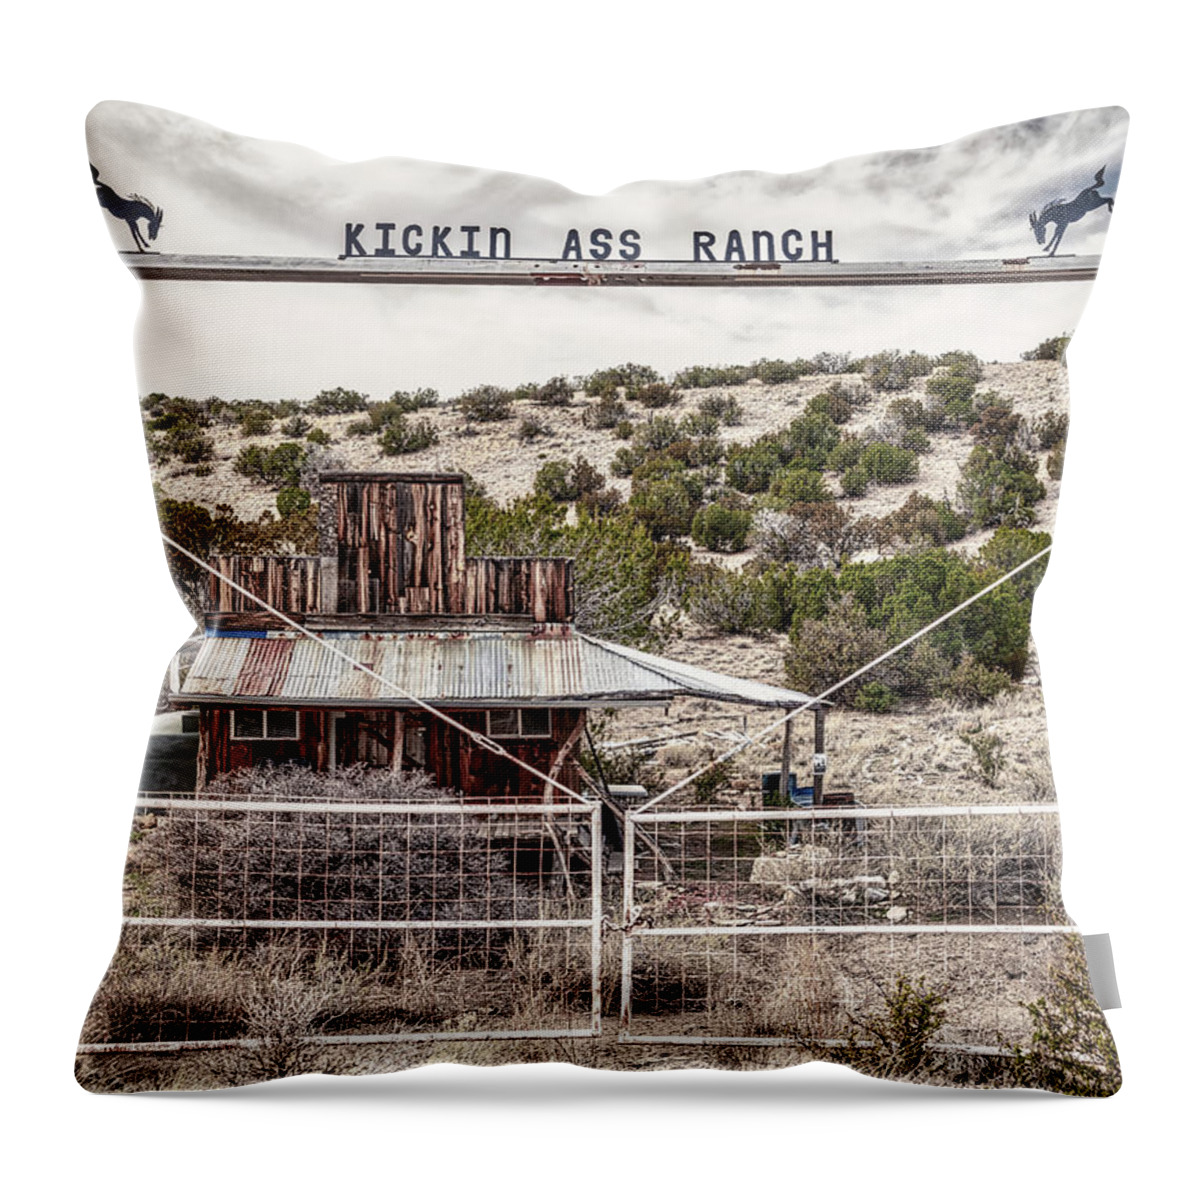 Architecture Throw Pillow featuring the photograph Kickin Ass Ranch by Robert FERD Frank